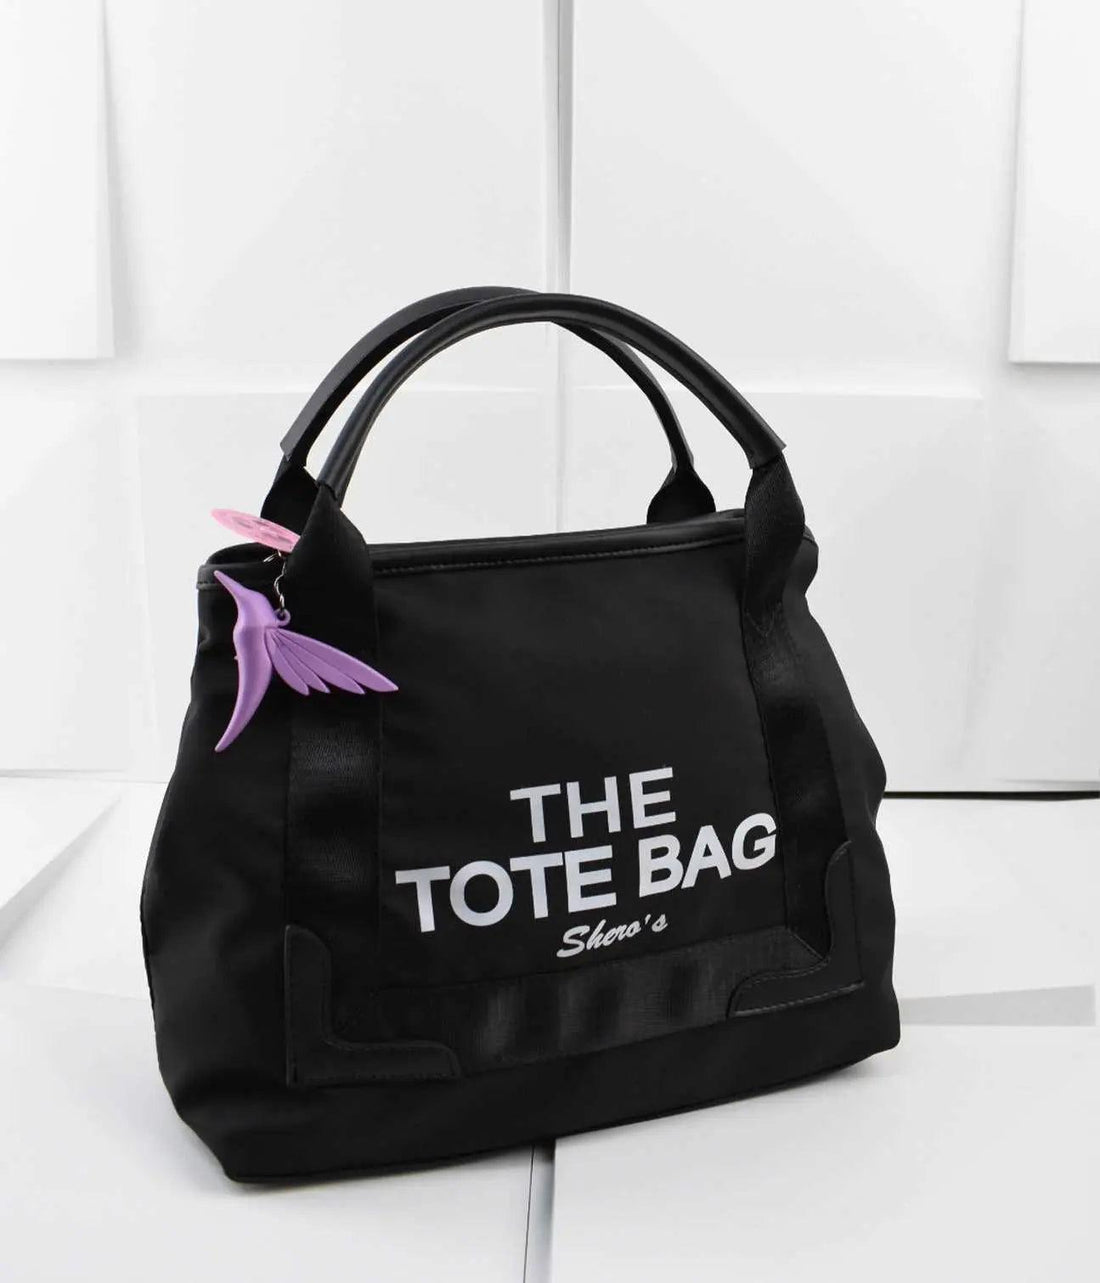 The Tote Bag Shero's